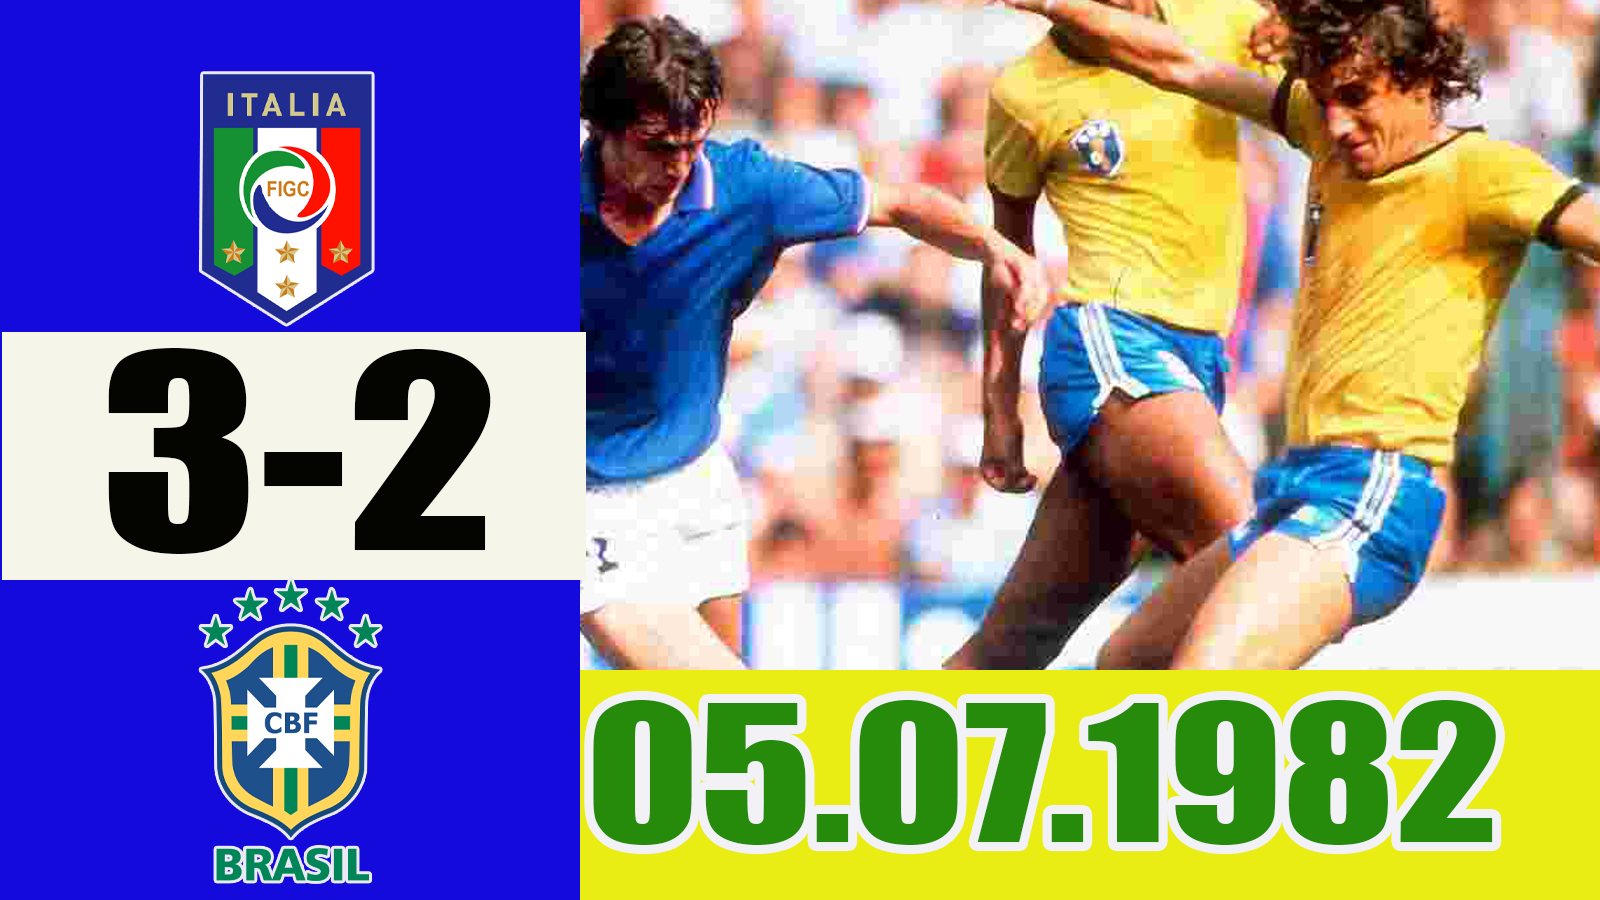 Италия - Бразилия 3-2. Мундиаль 1982. Немного о легендарном матче.